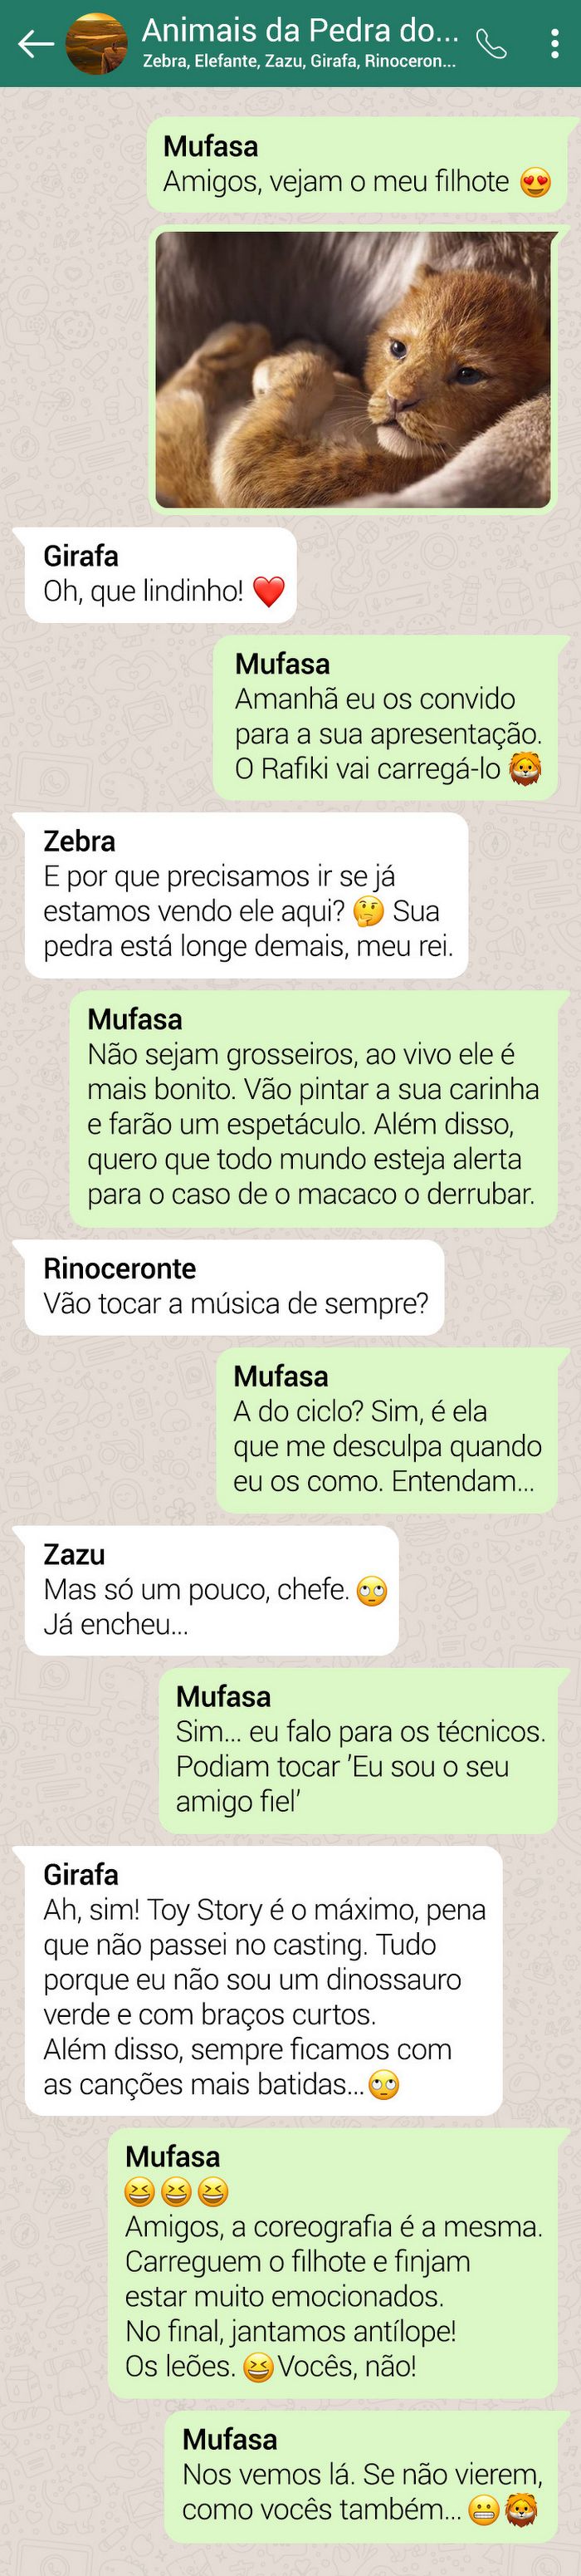 15 conversas dos personagens do Rei Leão pelo WhatsApp 15